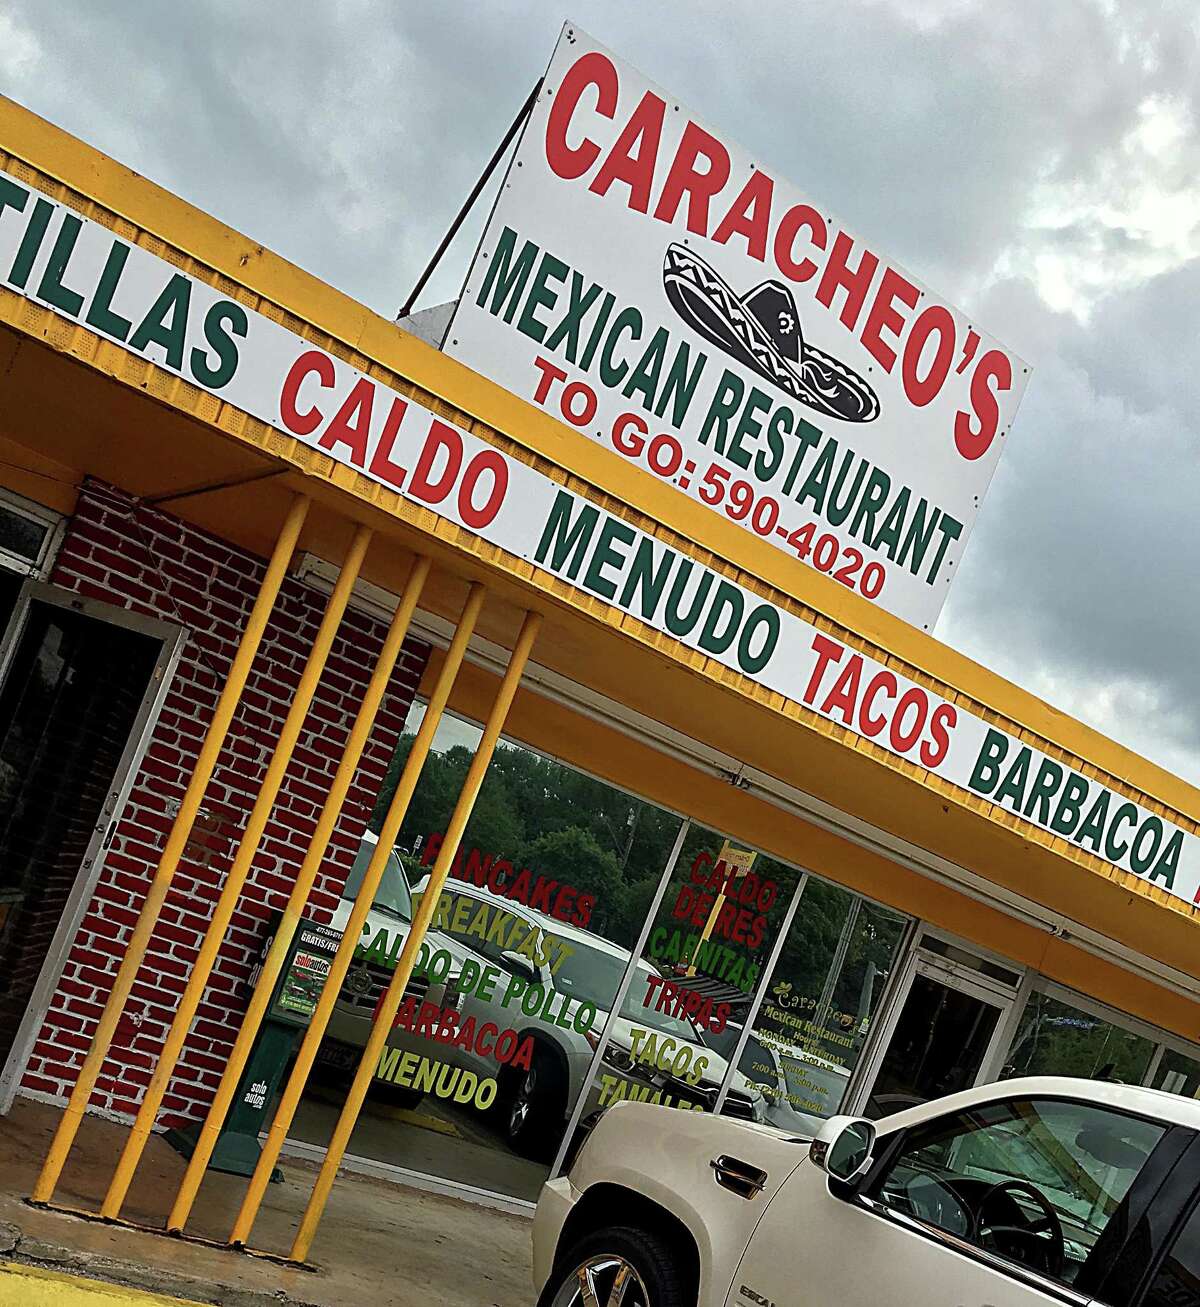 Caracheo’s Mexican Restaurant on MacArthur View.